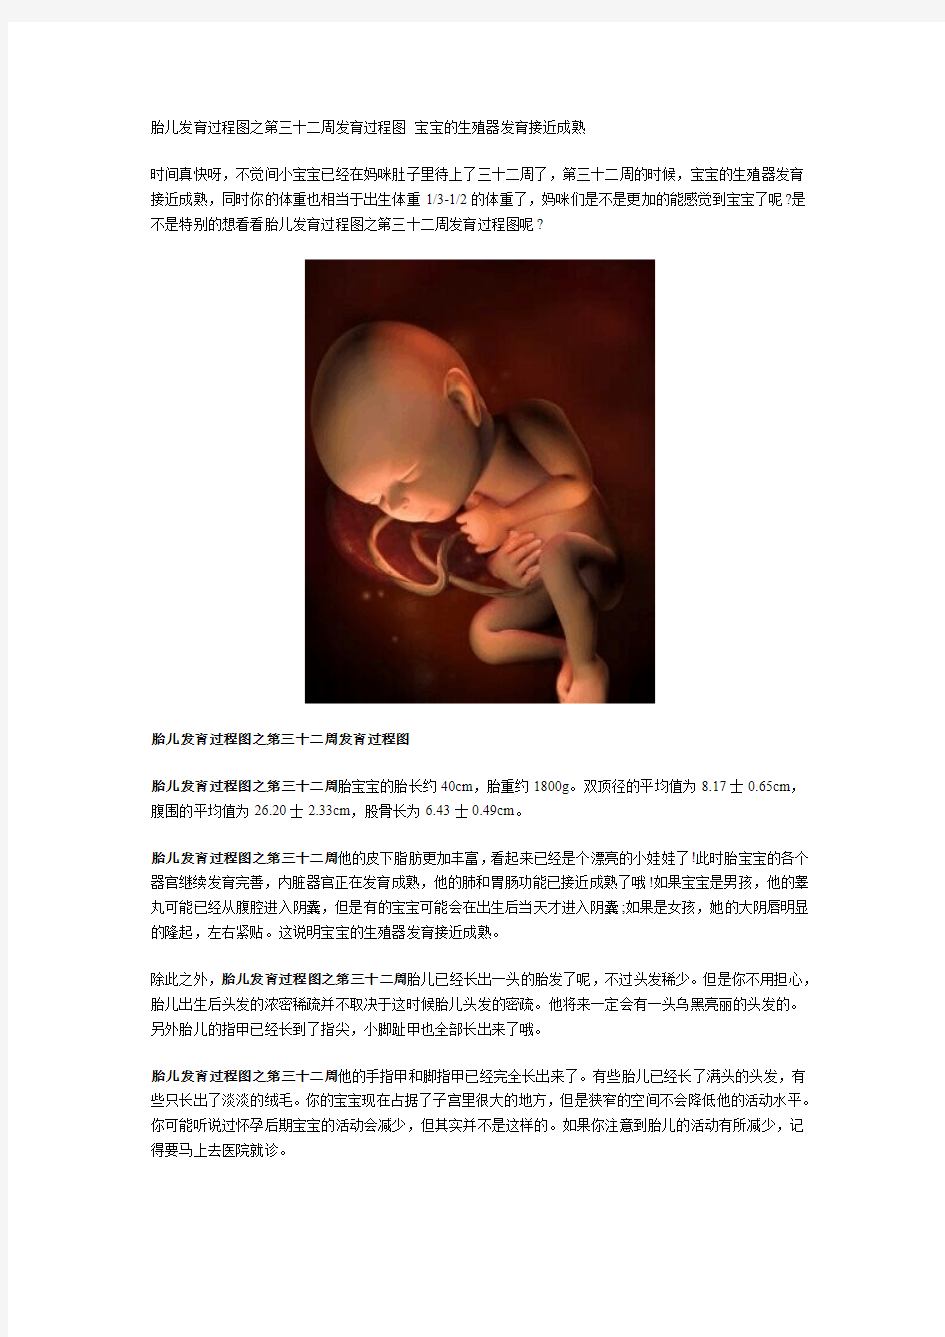 胎儿发育过程图之第三十二周发育过程图